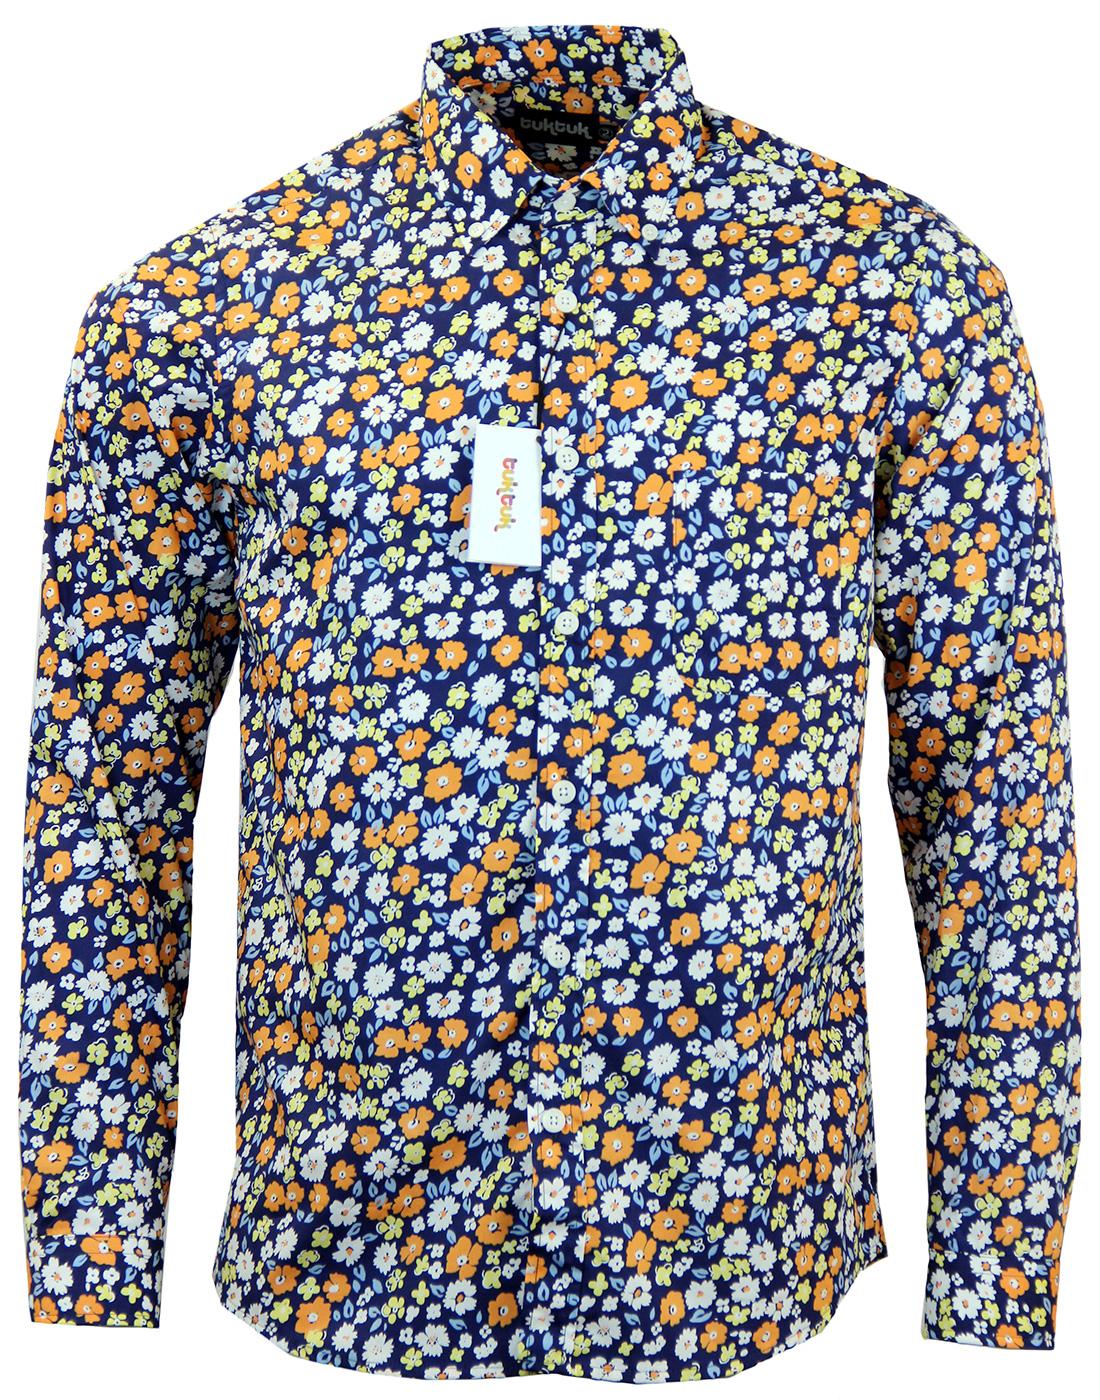 TUKTUK Retro Mod Floral Button Down Shirt